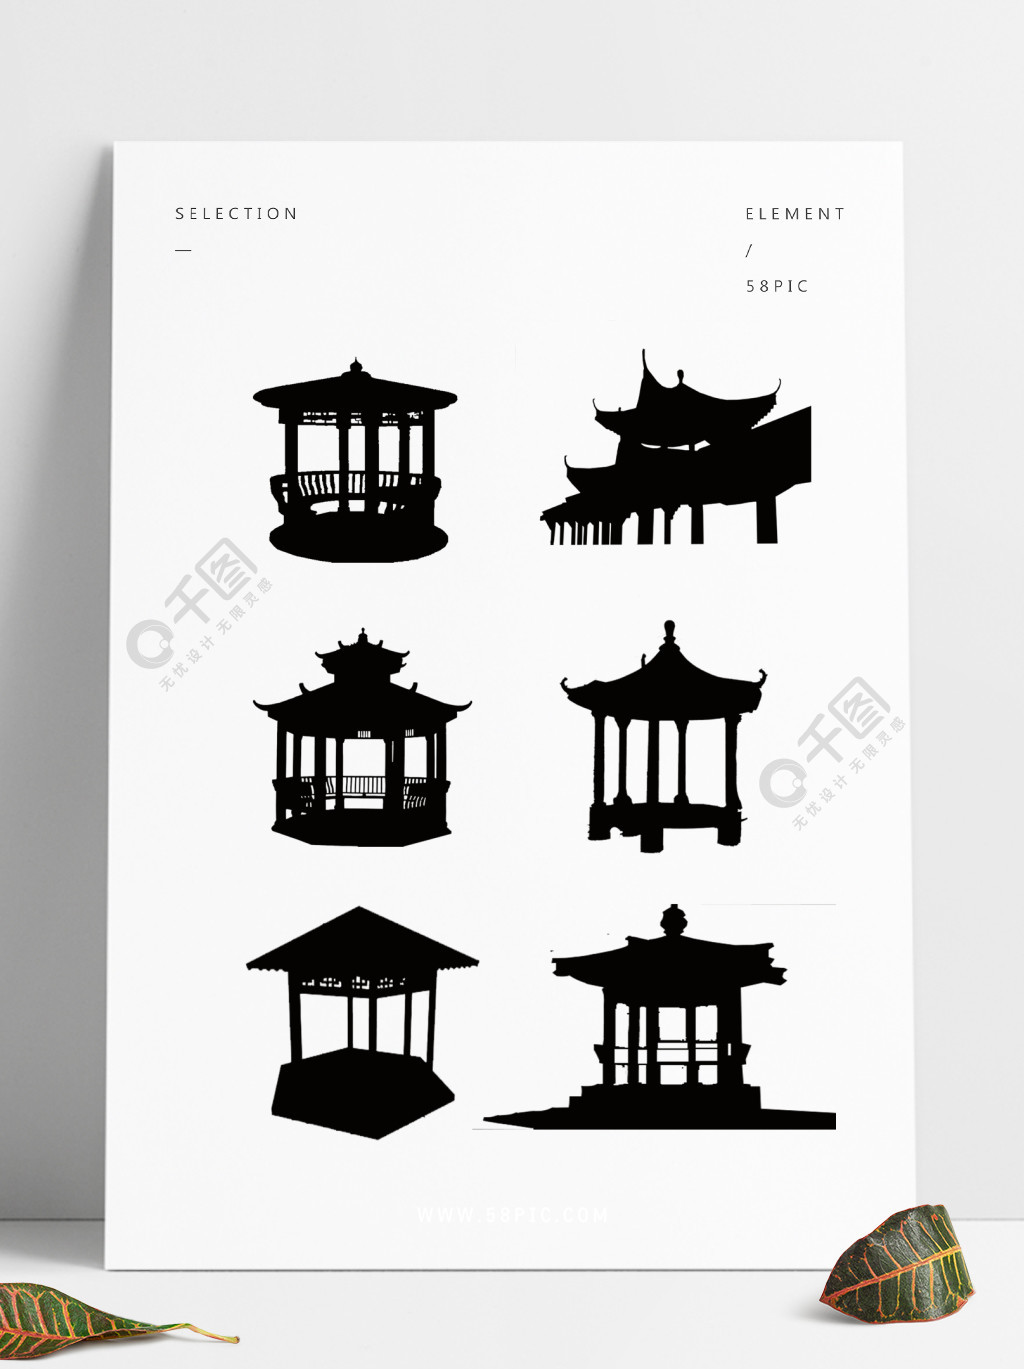 中国传统建筑亭子楼阁剪影简约2年前发布